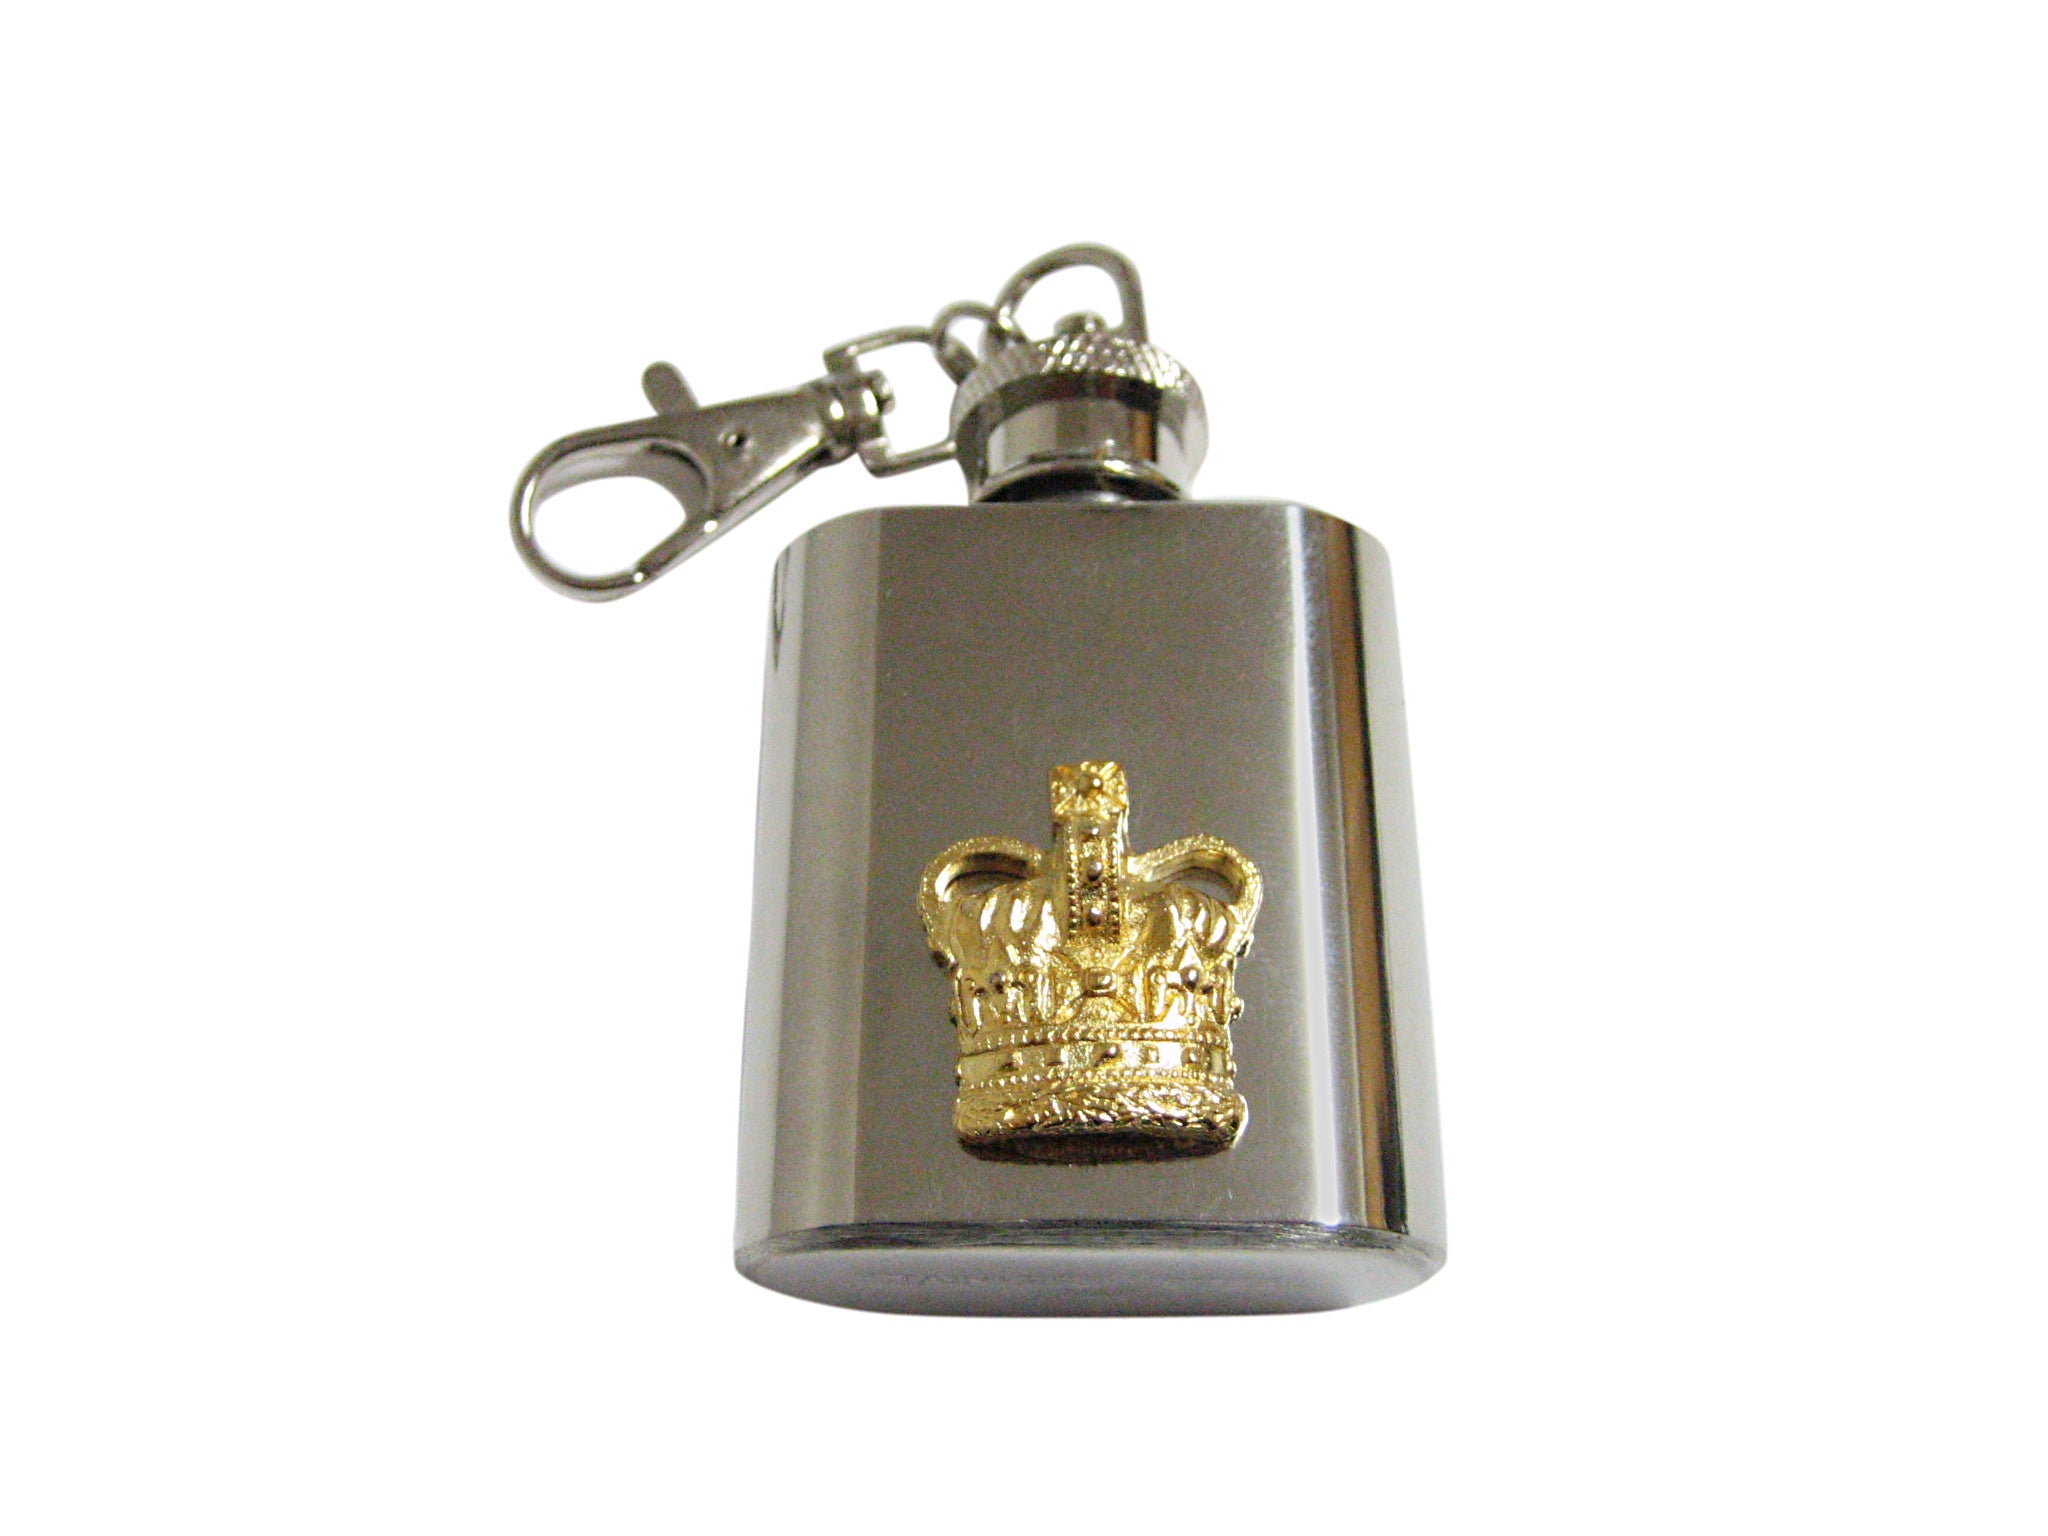 gold crown keychain